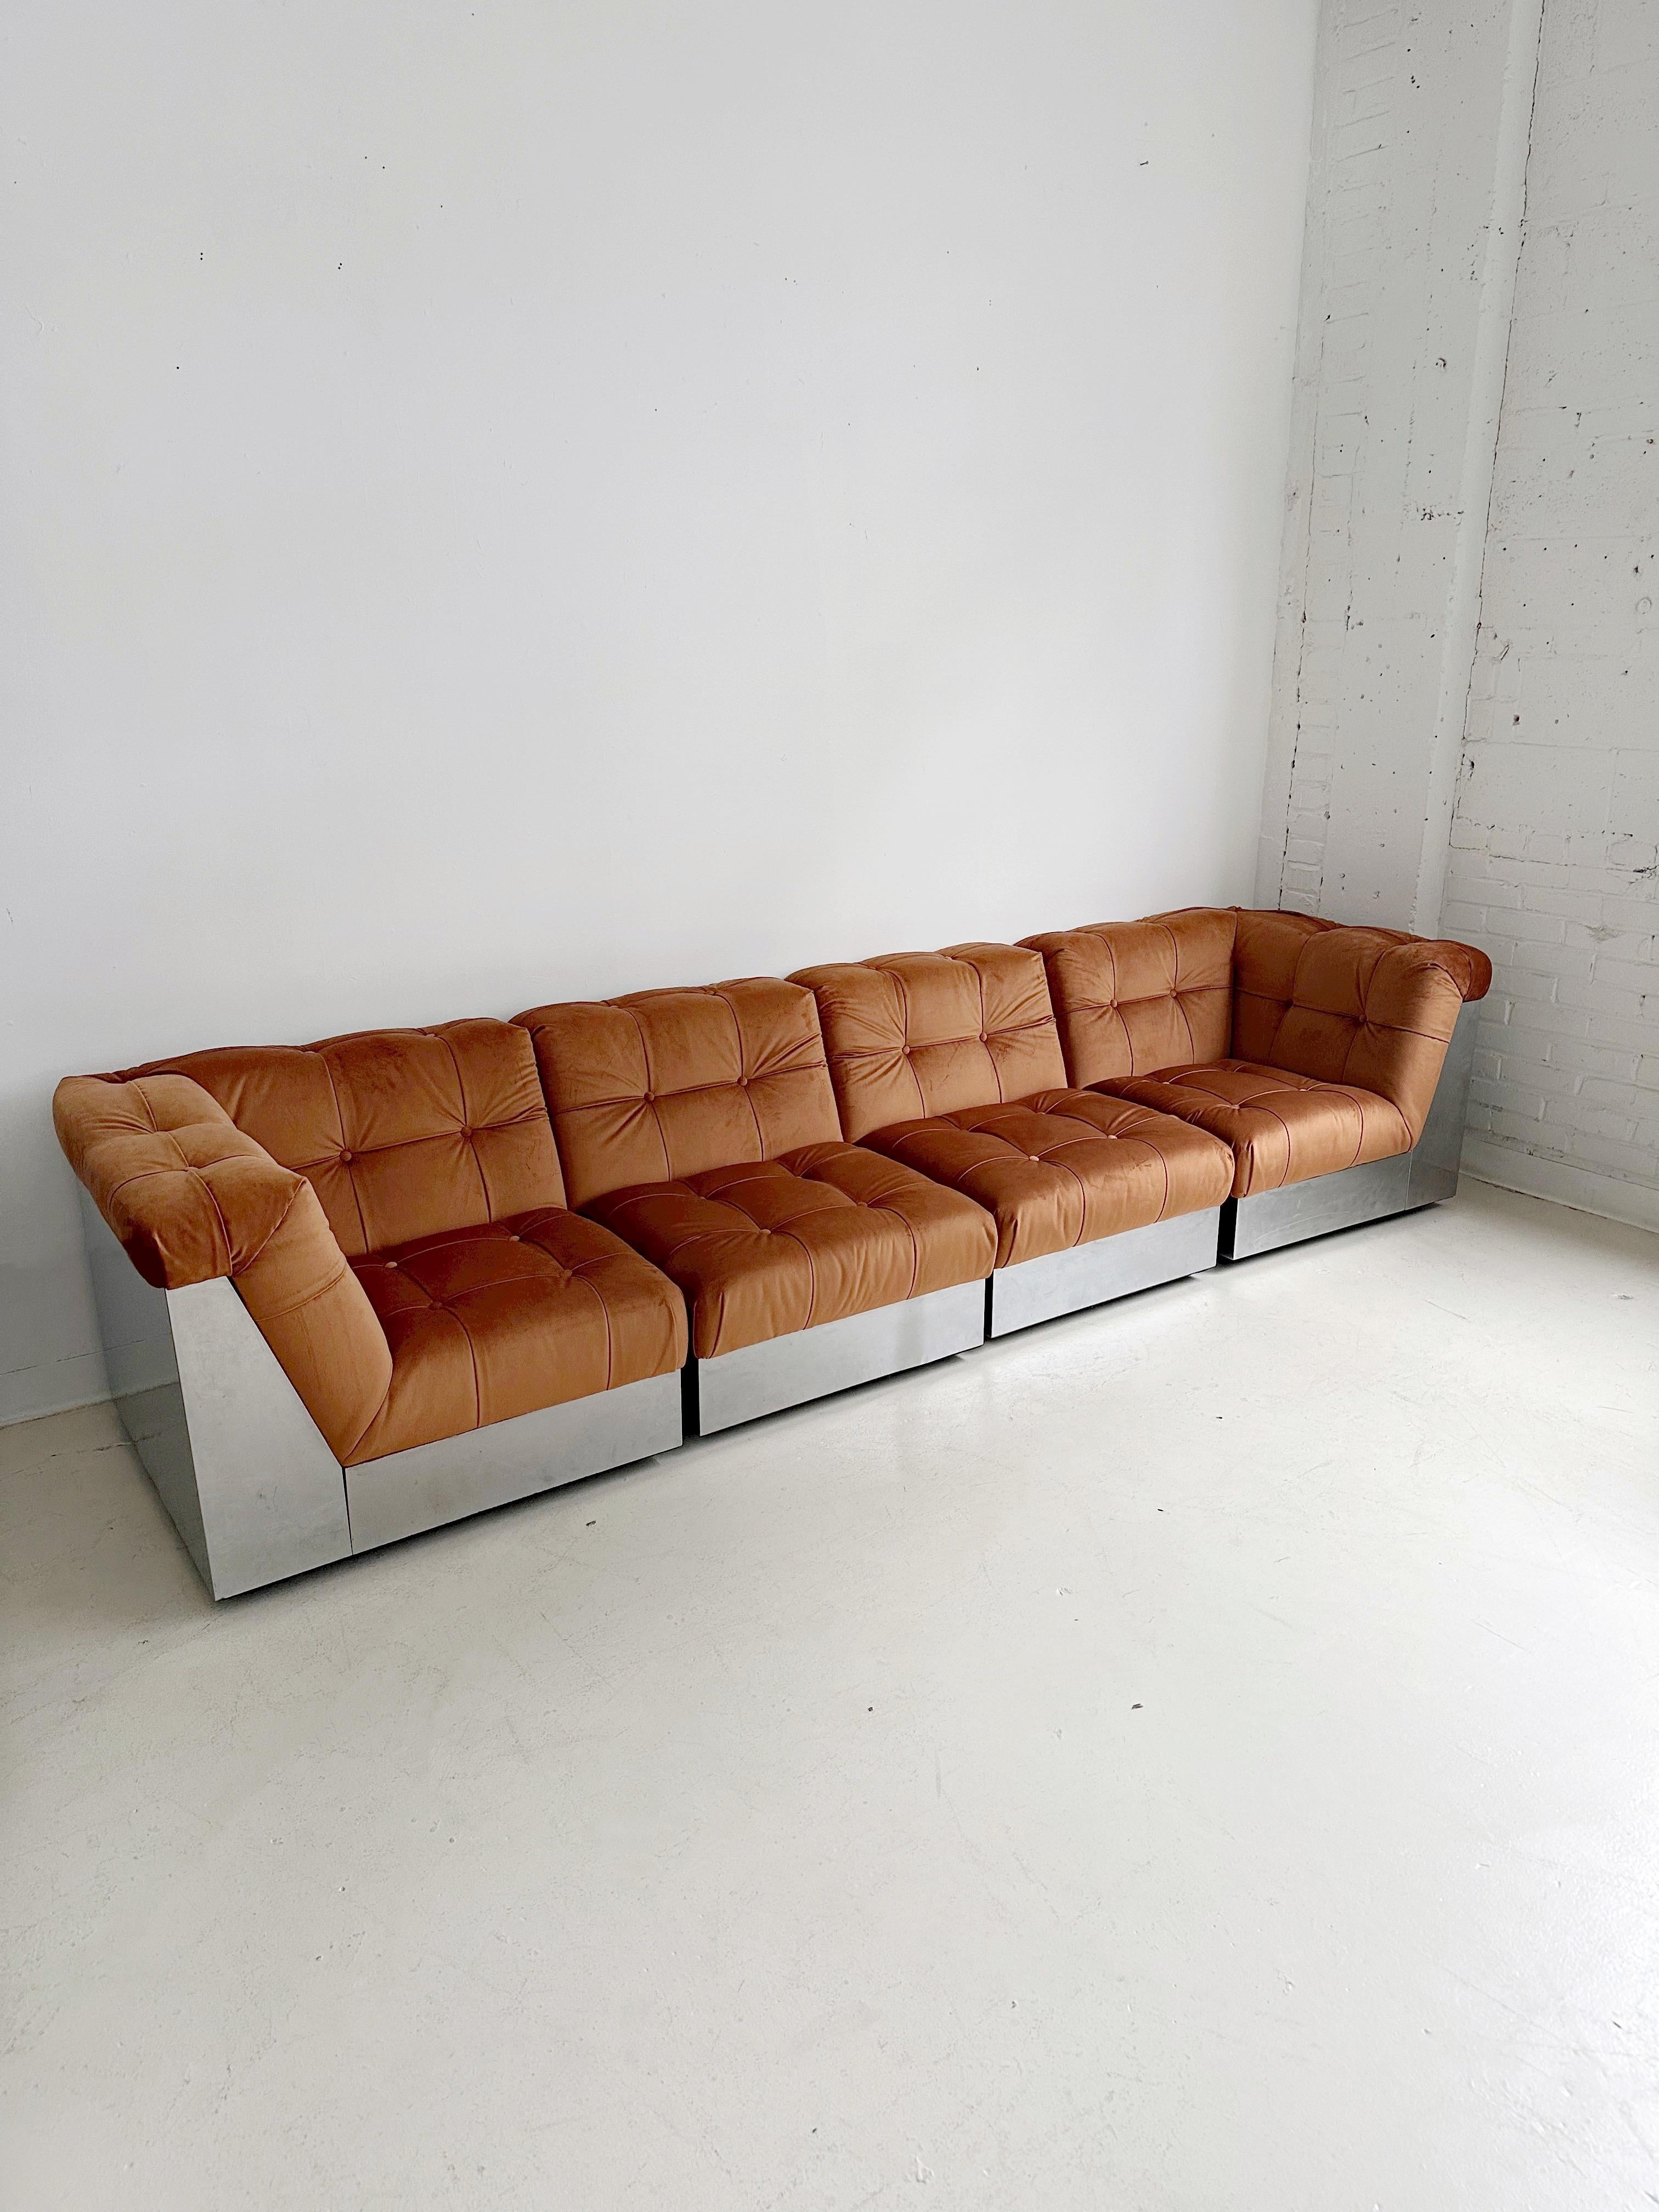 Samt & Stahlgestell 4 Pieces Modulares Sofa att. to Canasta by Giorgio Montani (Moderne)